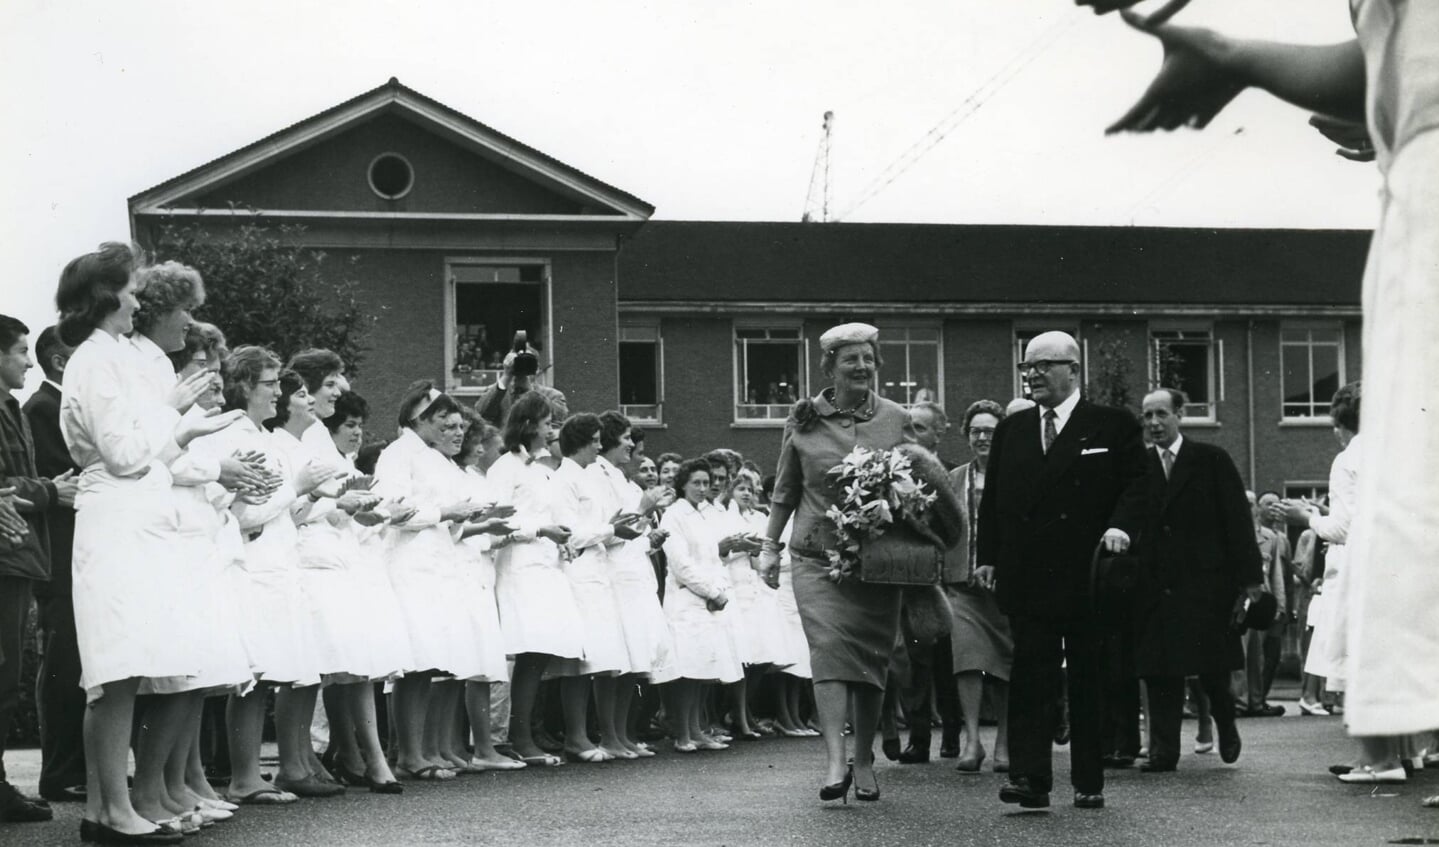 Koningin Juliana bezoekt Organon in 1961. Het personeel heet haar welkom. Naast haar loopt Saal van Zwanenberg, oprichter van Organon.